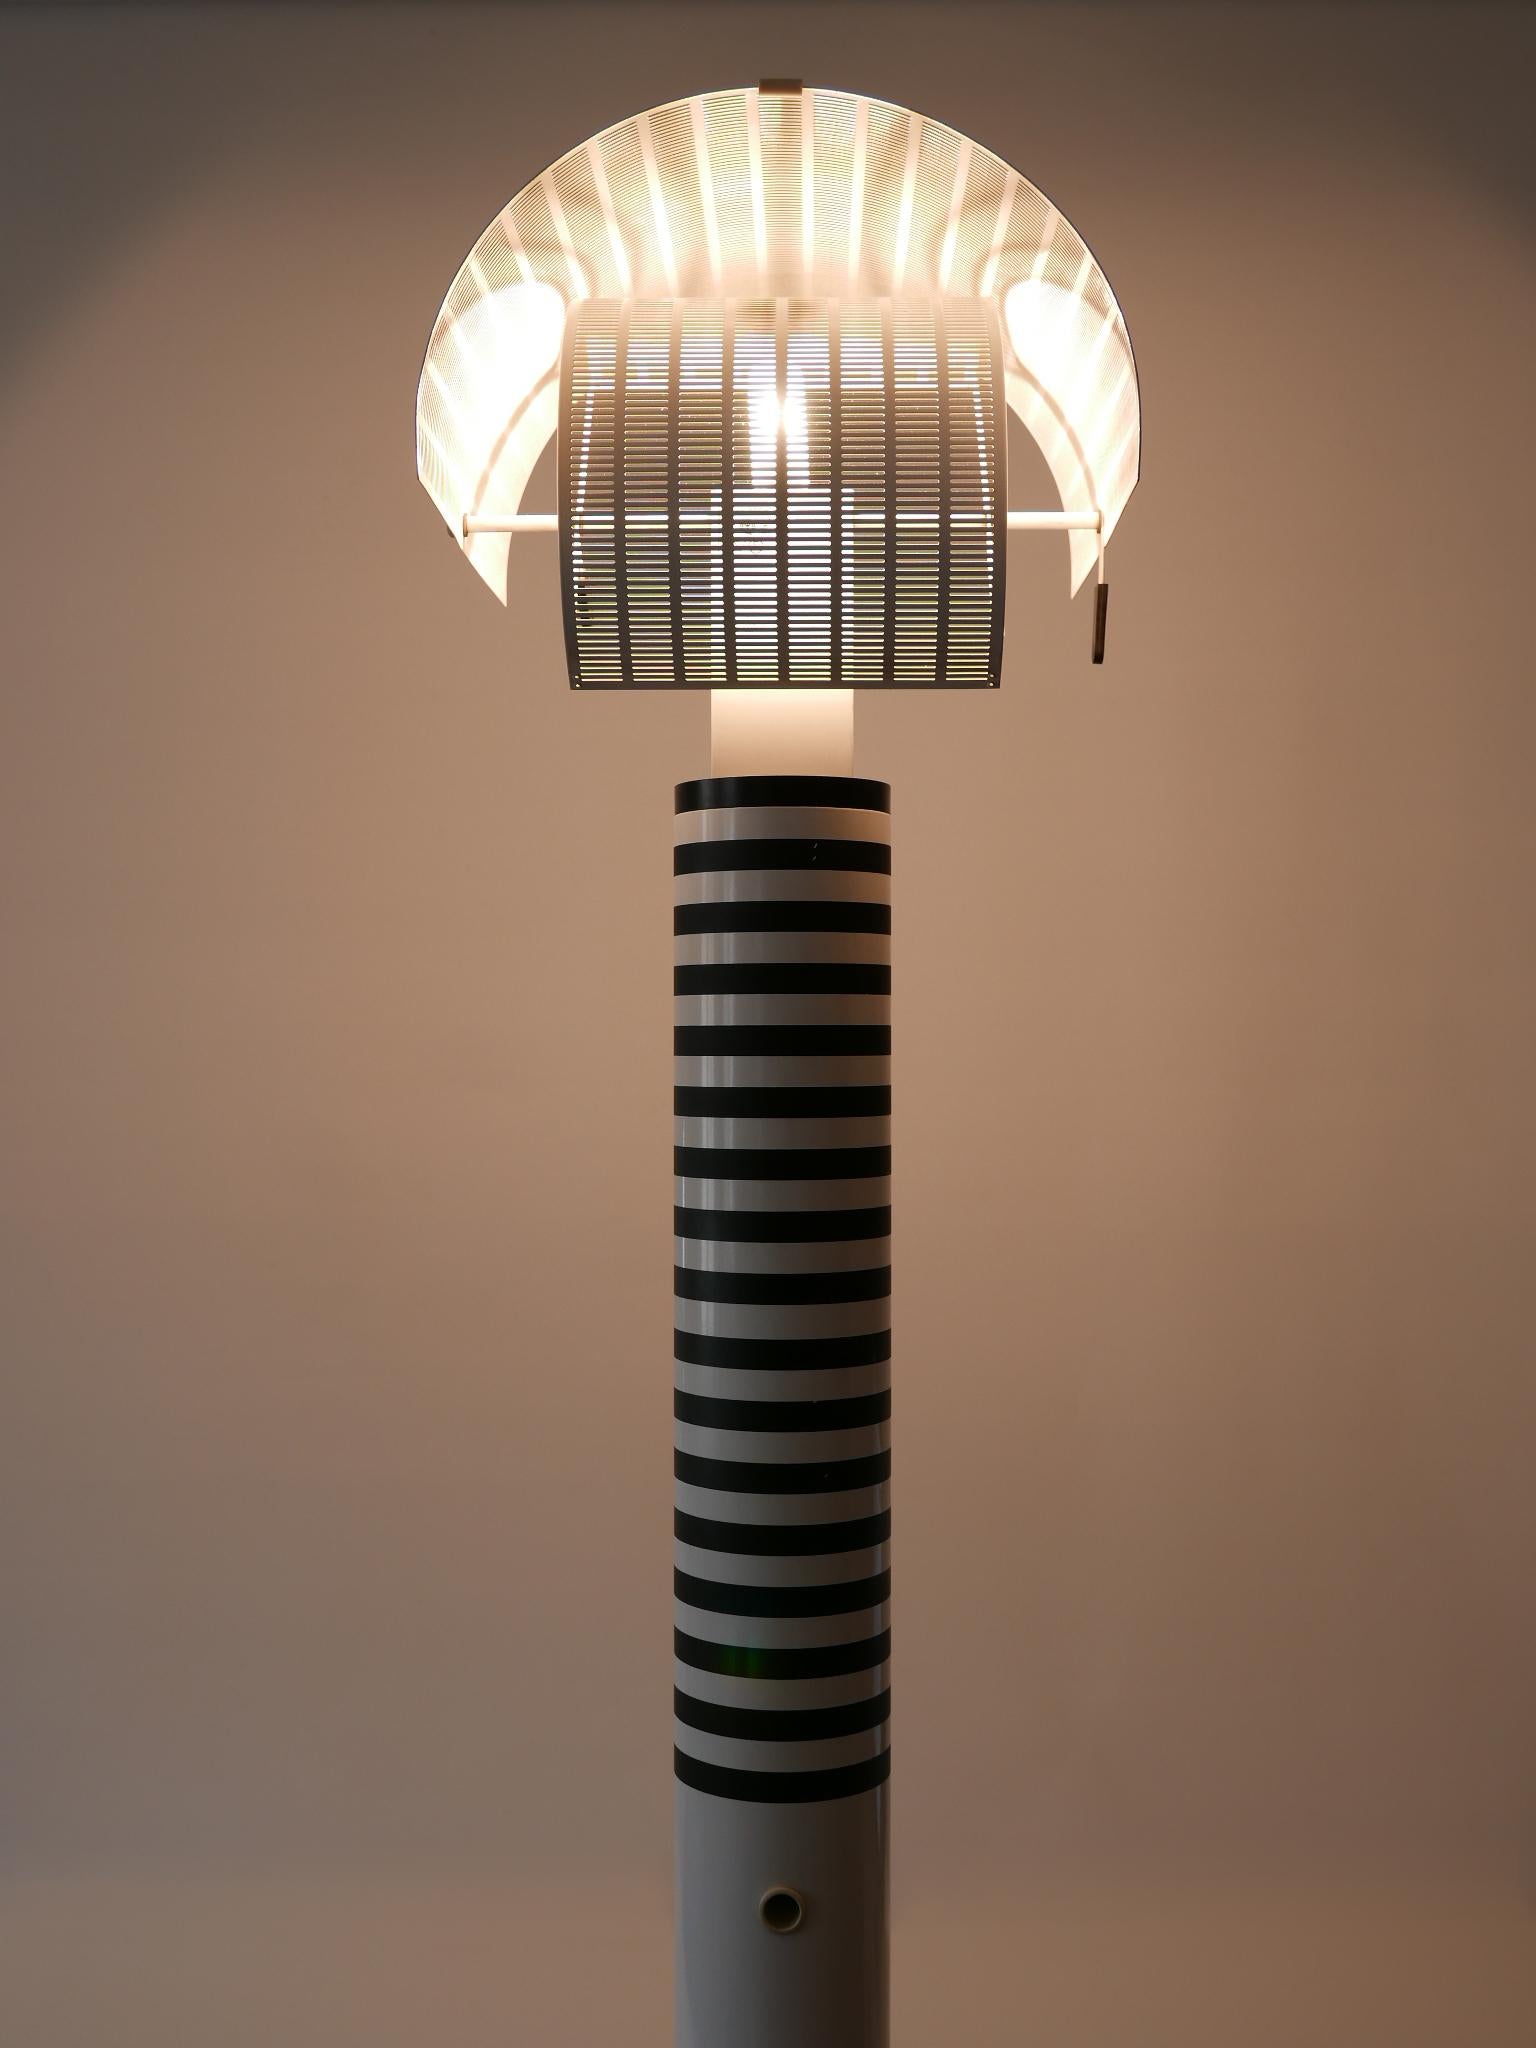 Monumental Postmodern Shogun Floor Lamp by Mario Botta for Artemide Italy 1980s For Sale 9